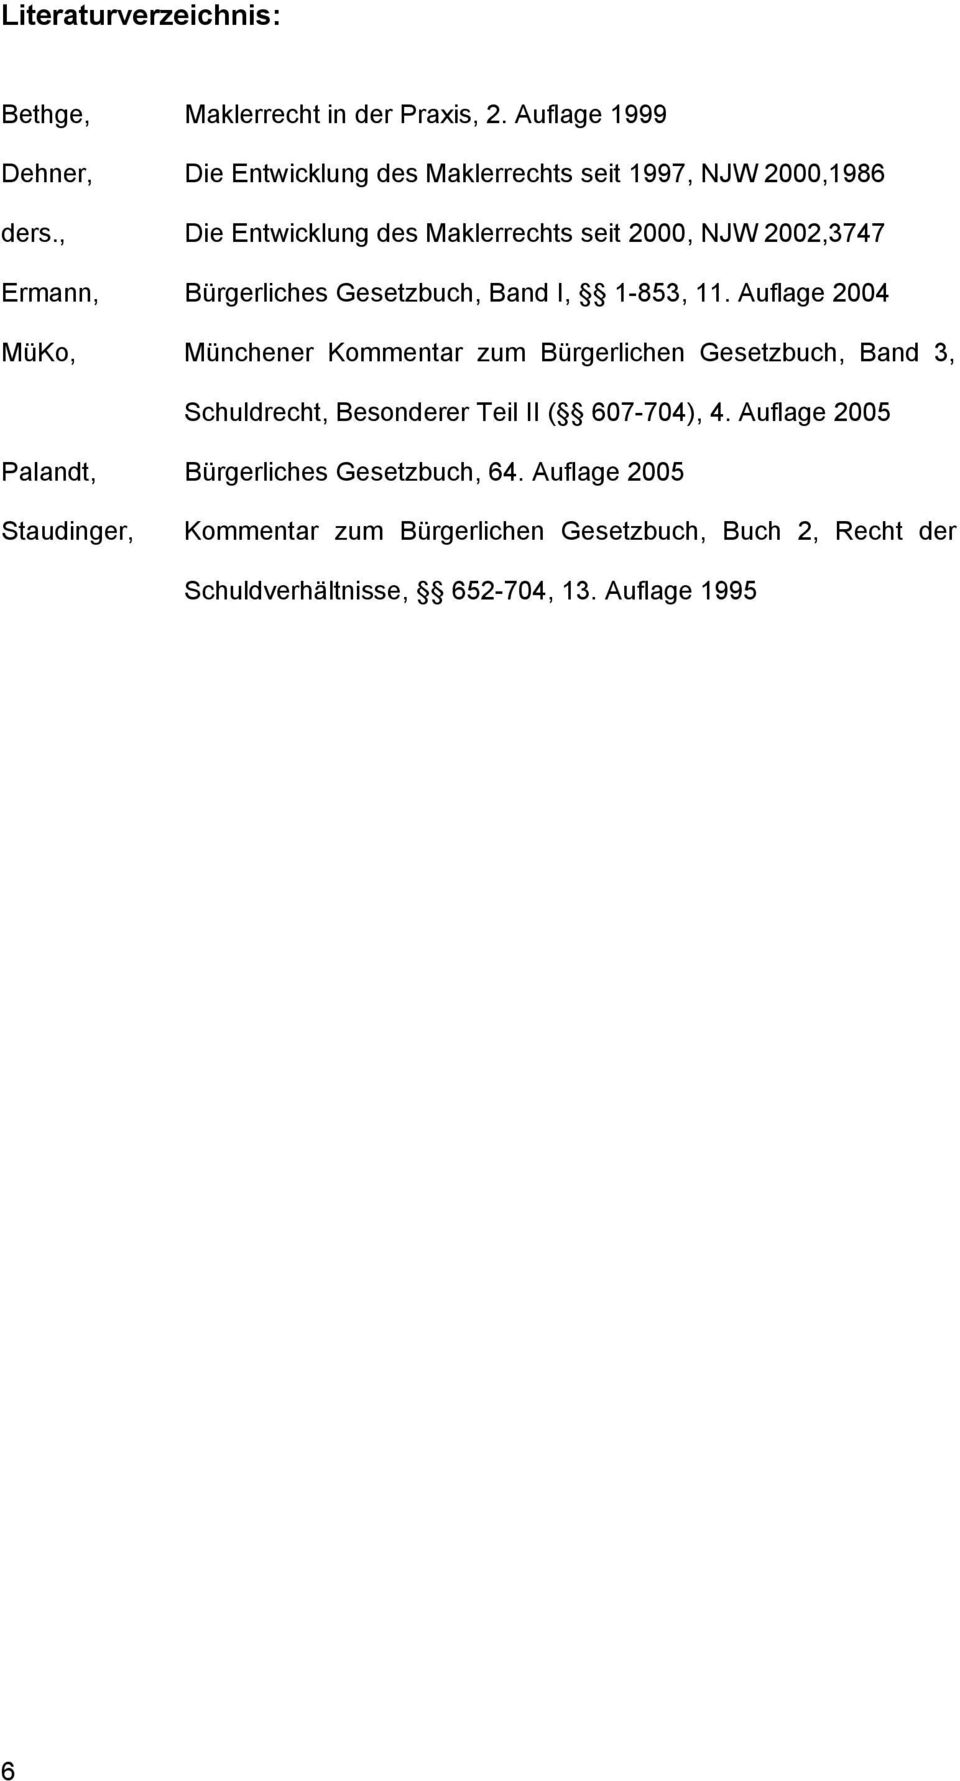 , Die Entwicklung des Maklerrechts seit 2000, NJW 2002,3747 Ermann, Bürgerliches Gesetzbuch, Band I, 1-853, 11.